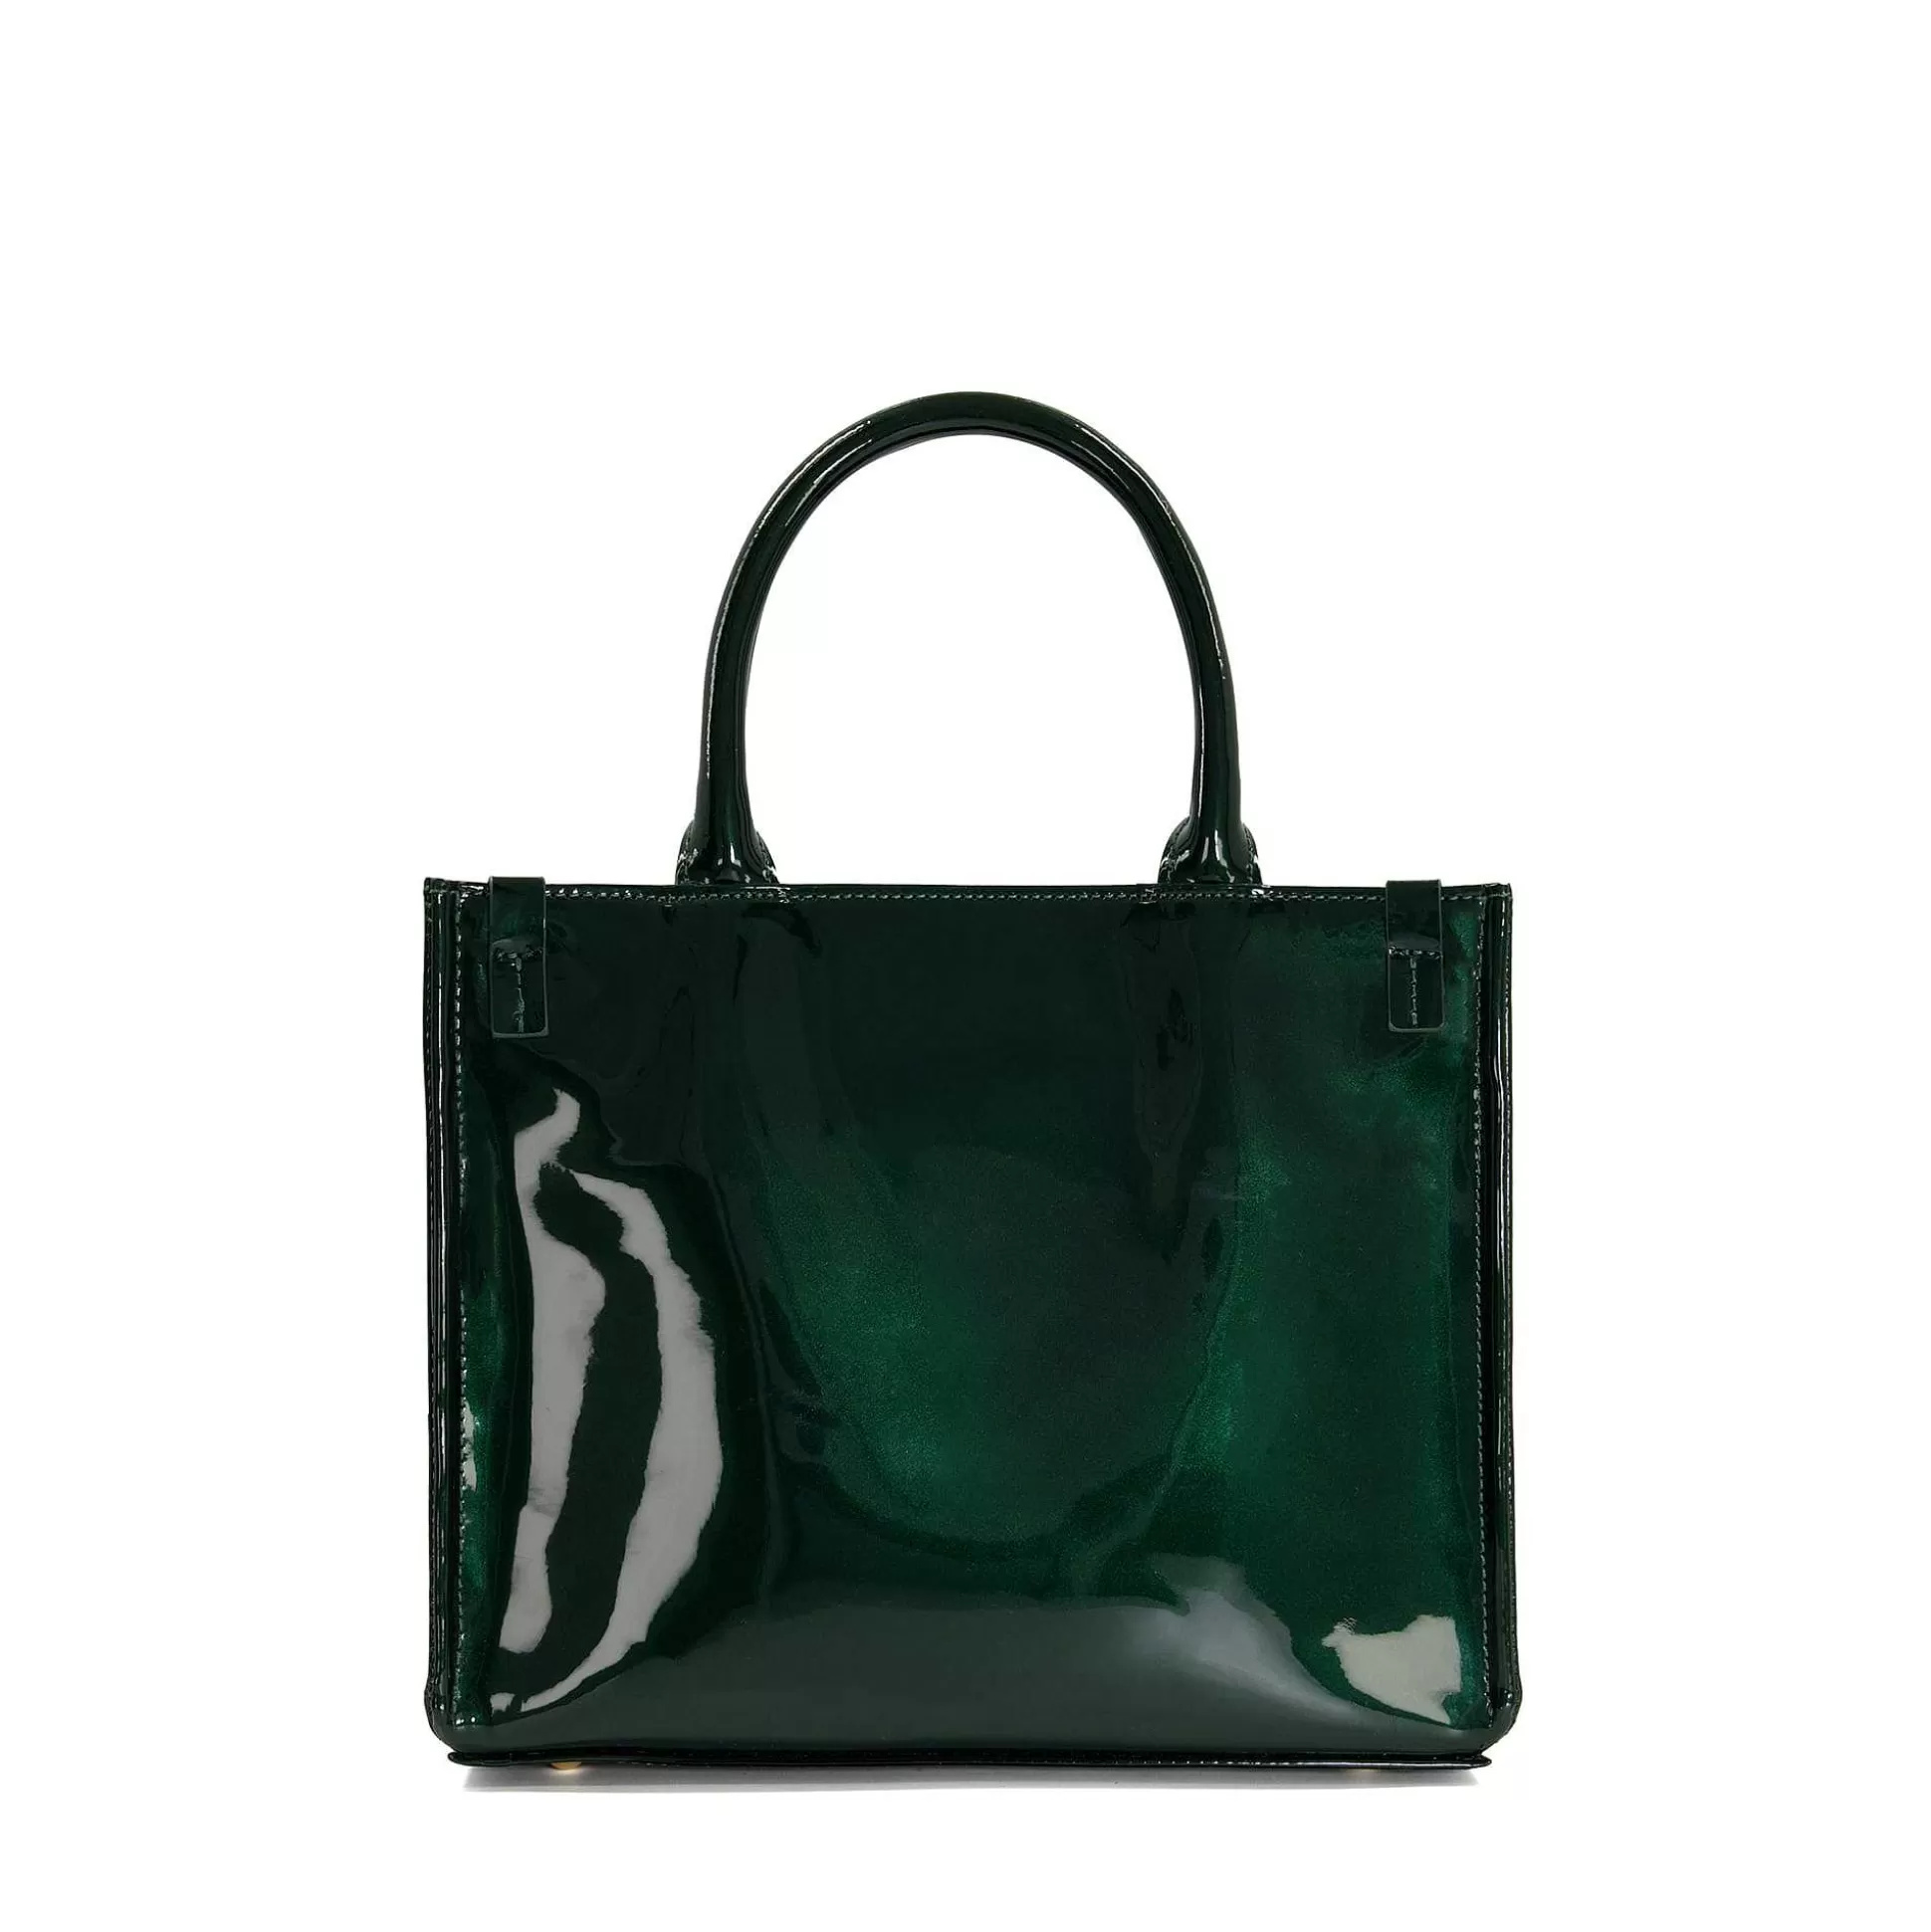 Dune London DINKYDEXTER - GREEN- Handbags